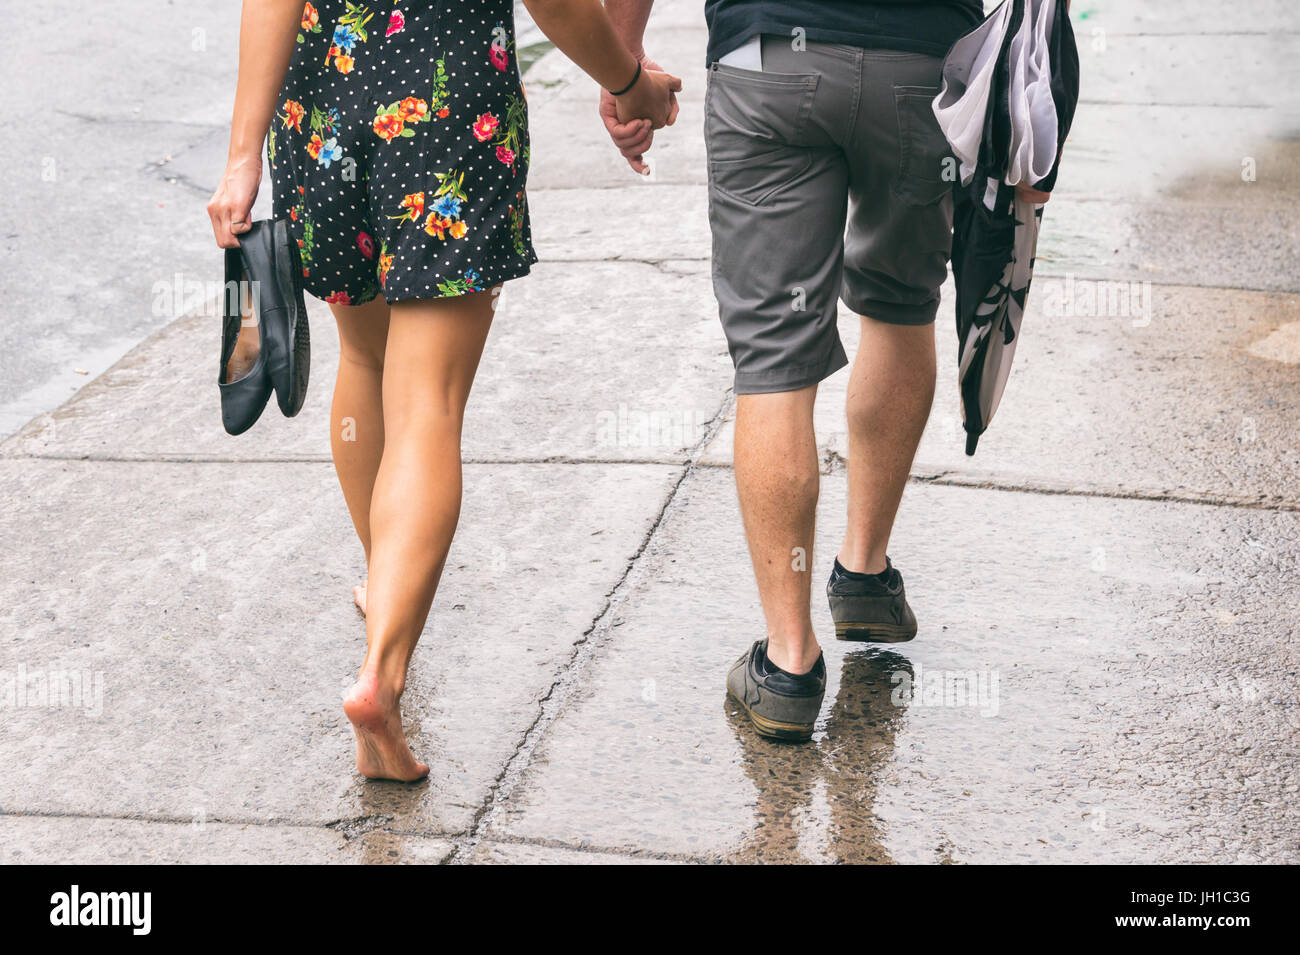 Paar auf der Straße unter dem Regen, Frau barfuß Stockfoto